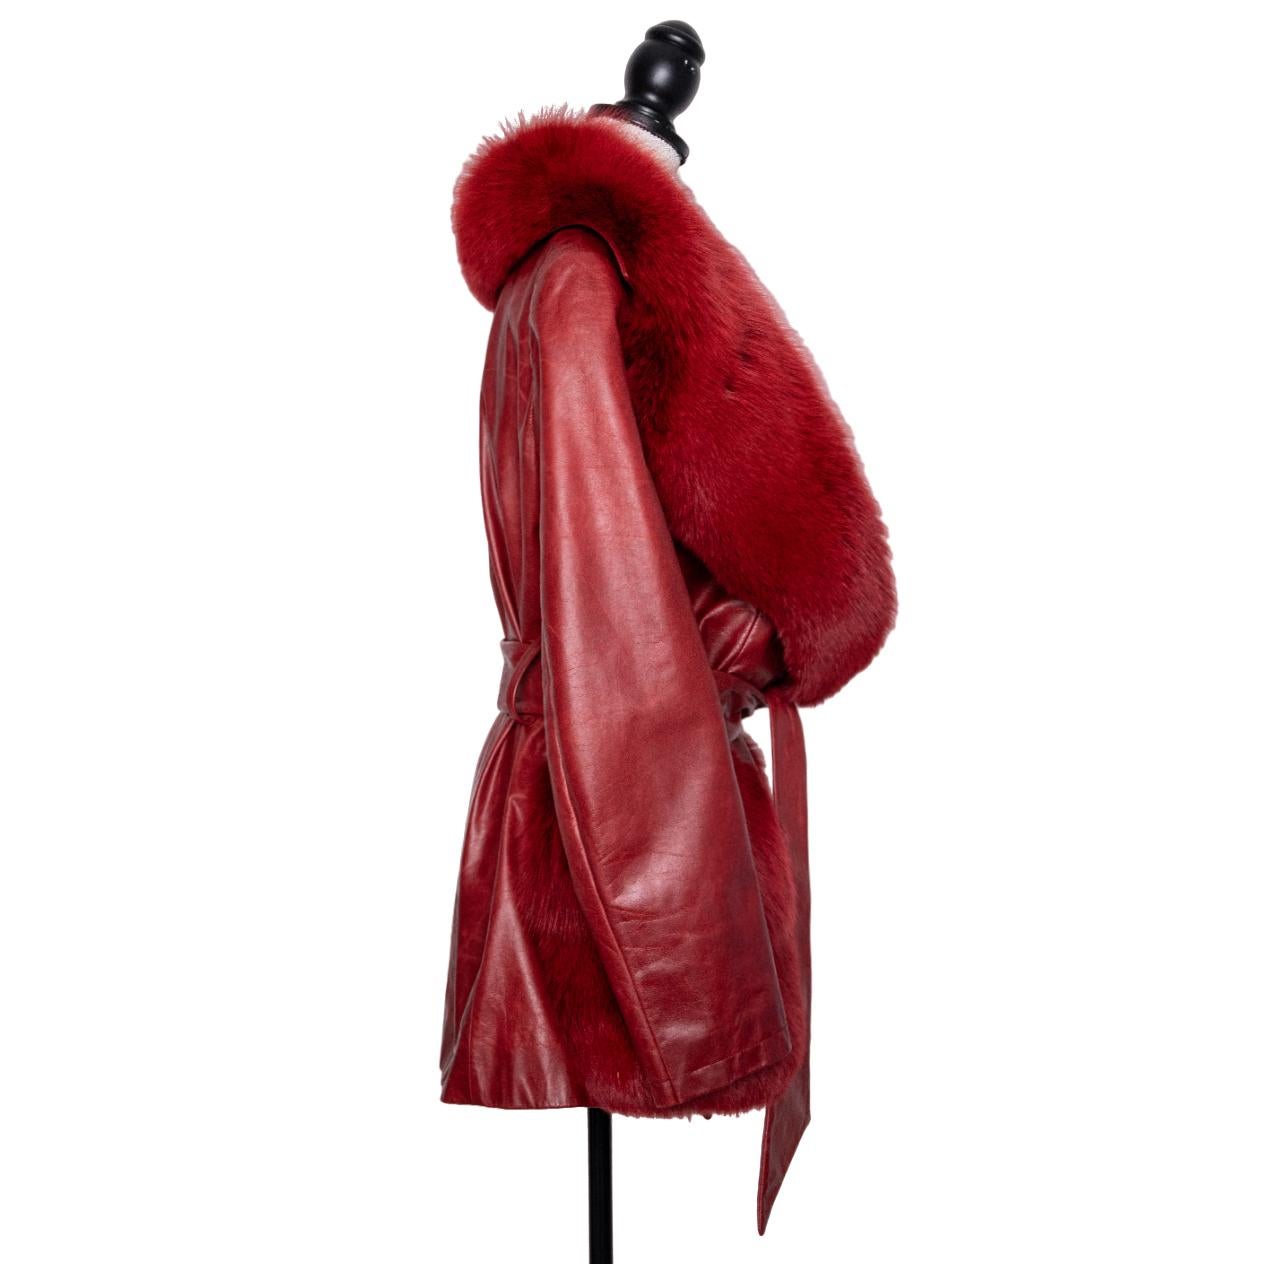 Diese Vintage-Lederjacke von John Galliano ist ein echtes Statement. Sie präsentiert sich in einem leuchtenden Rot, das durch einen luxuriösen Fuchspelzkragen ergänzt wird. Das Modell in Größe F42 repräsentiert Gallianos kühnes und innovatives